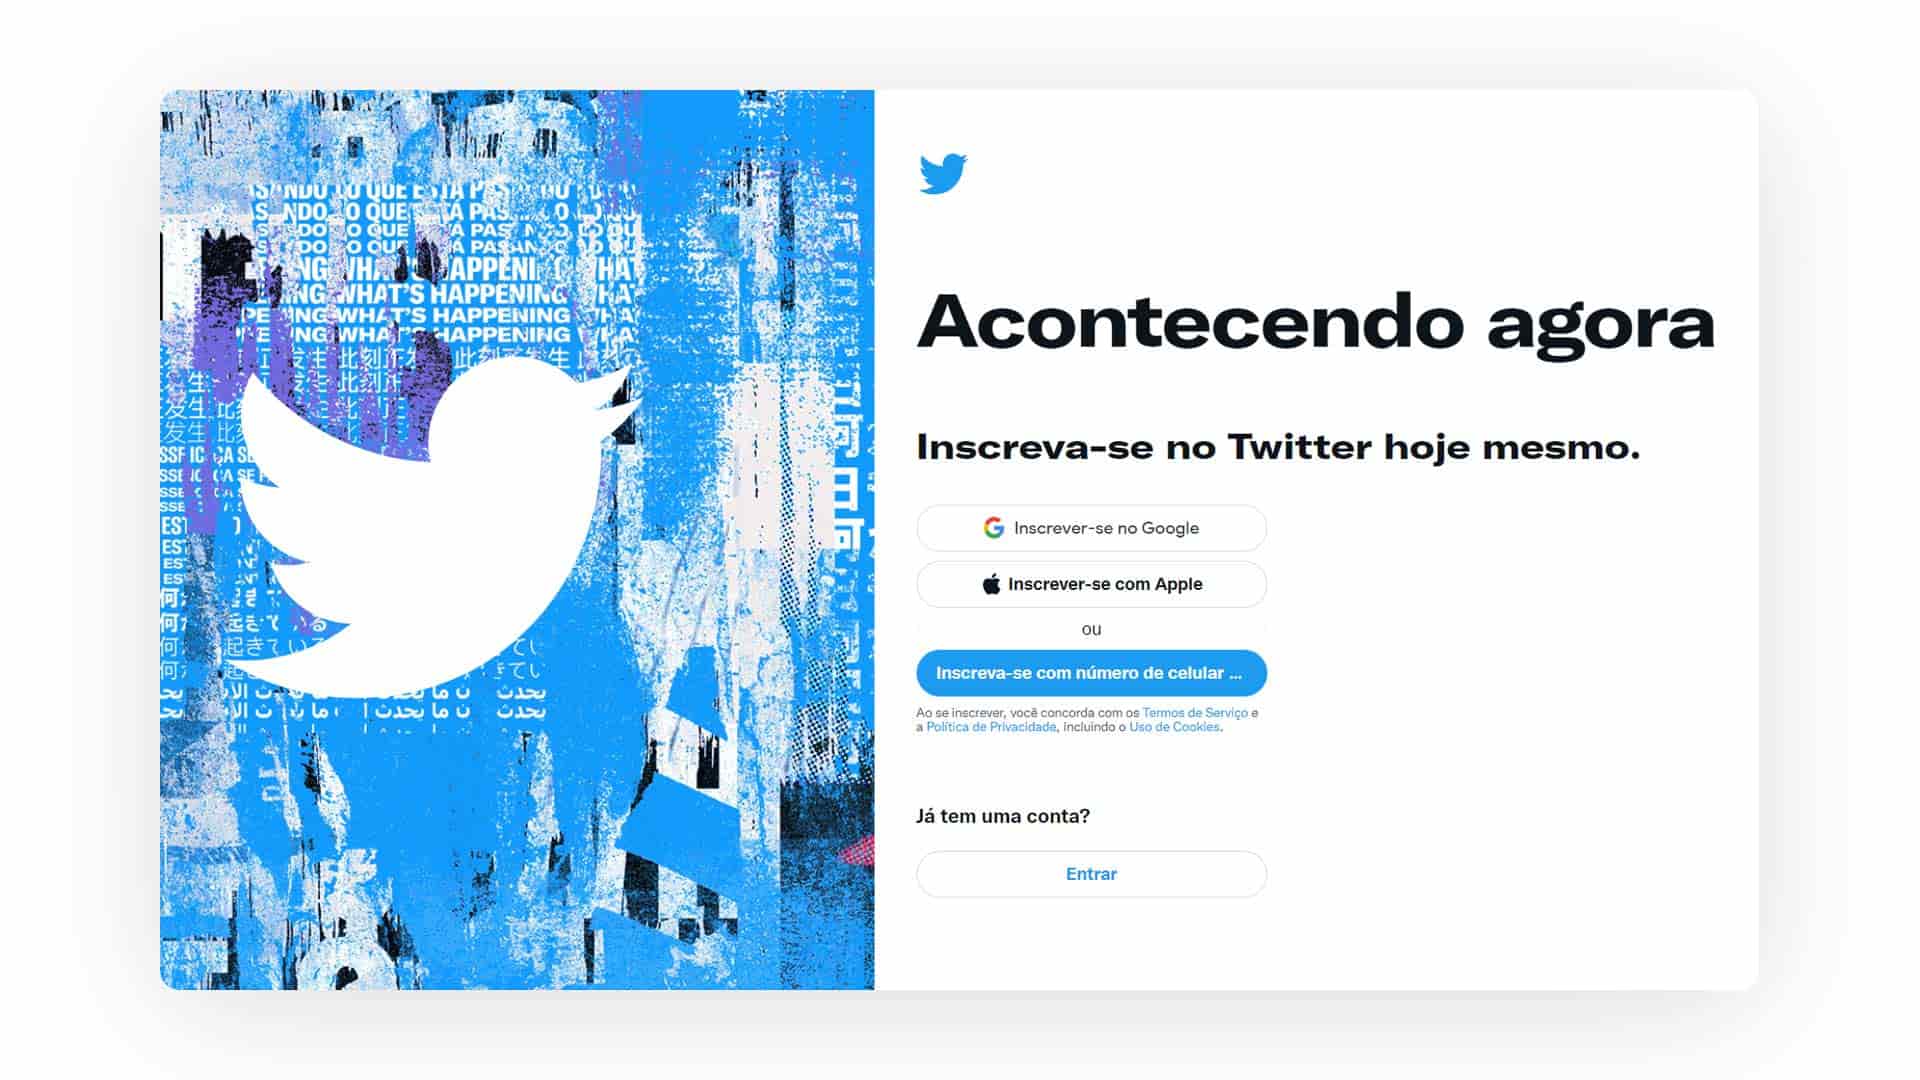 Print screen da tela inicial de cadastro mostrando como funciona o Twitter